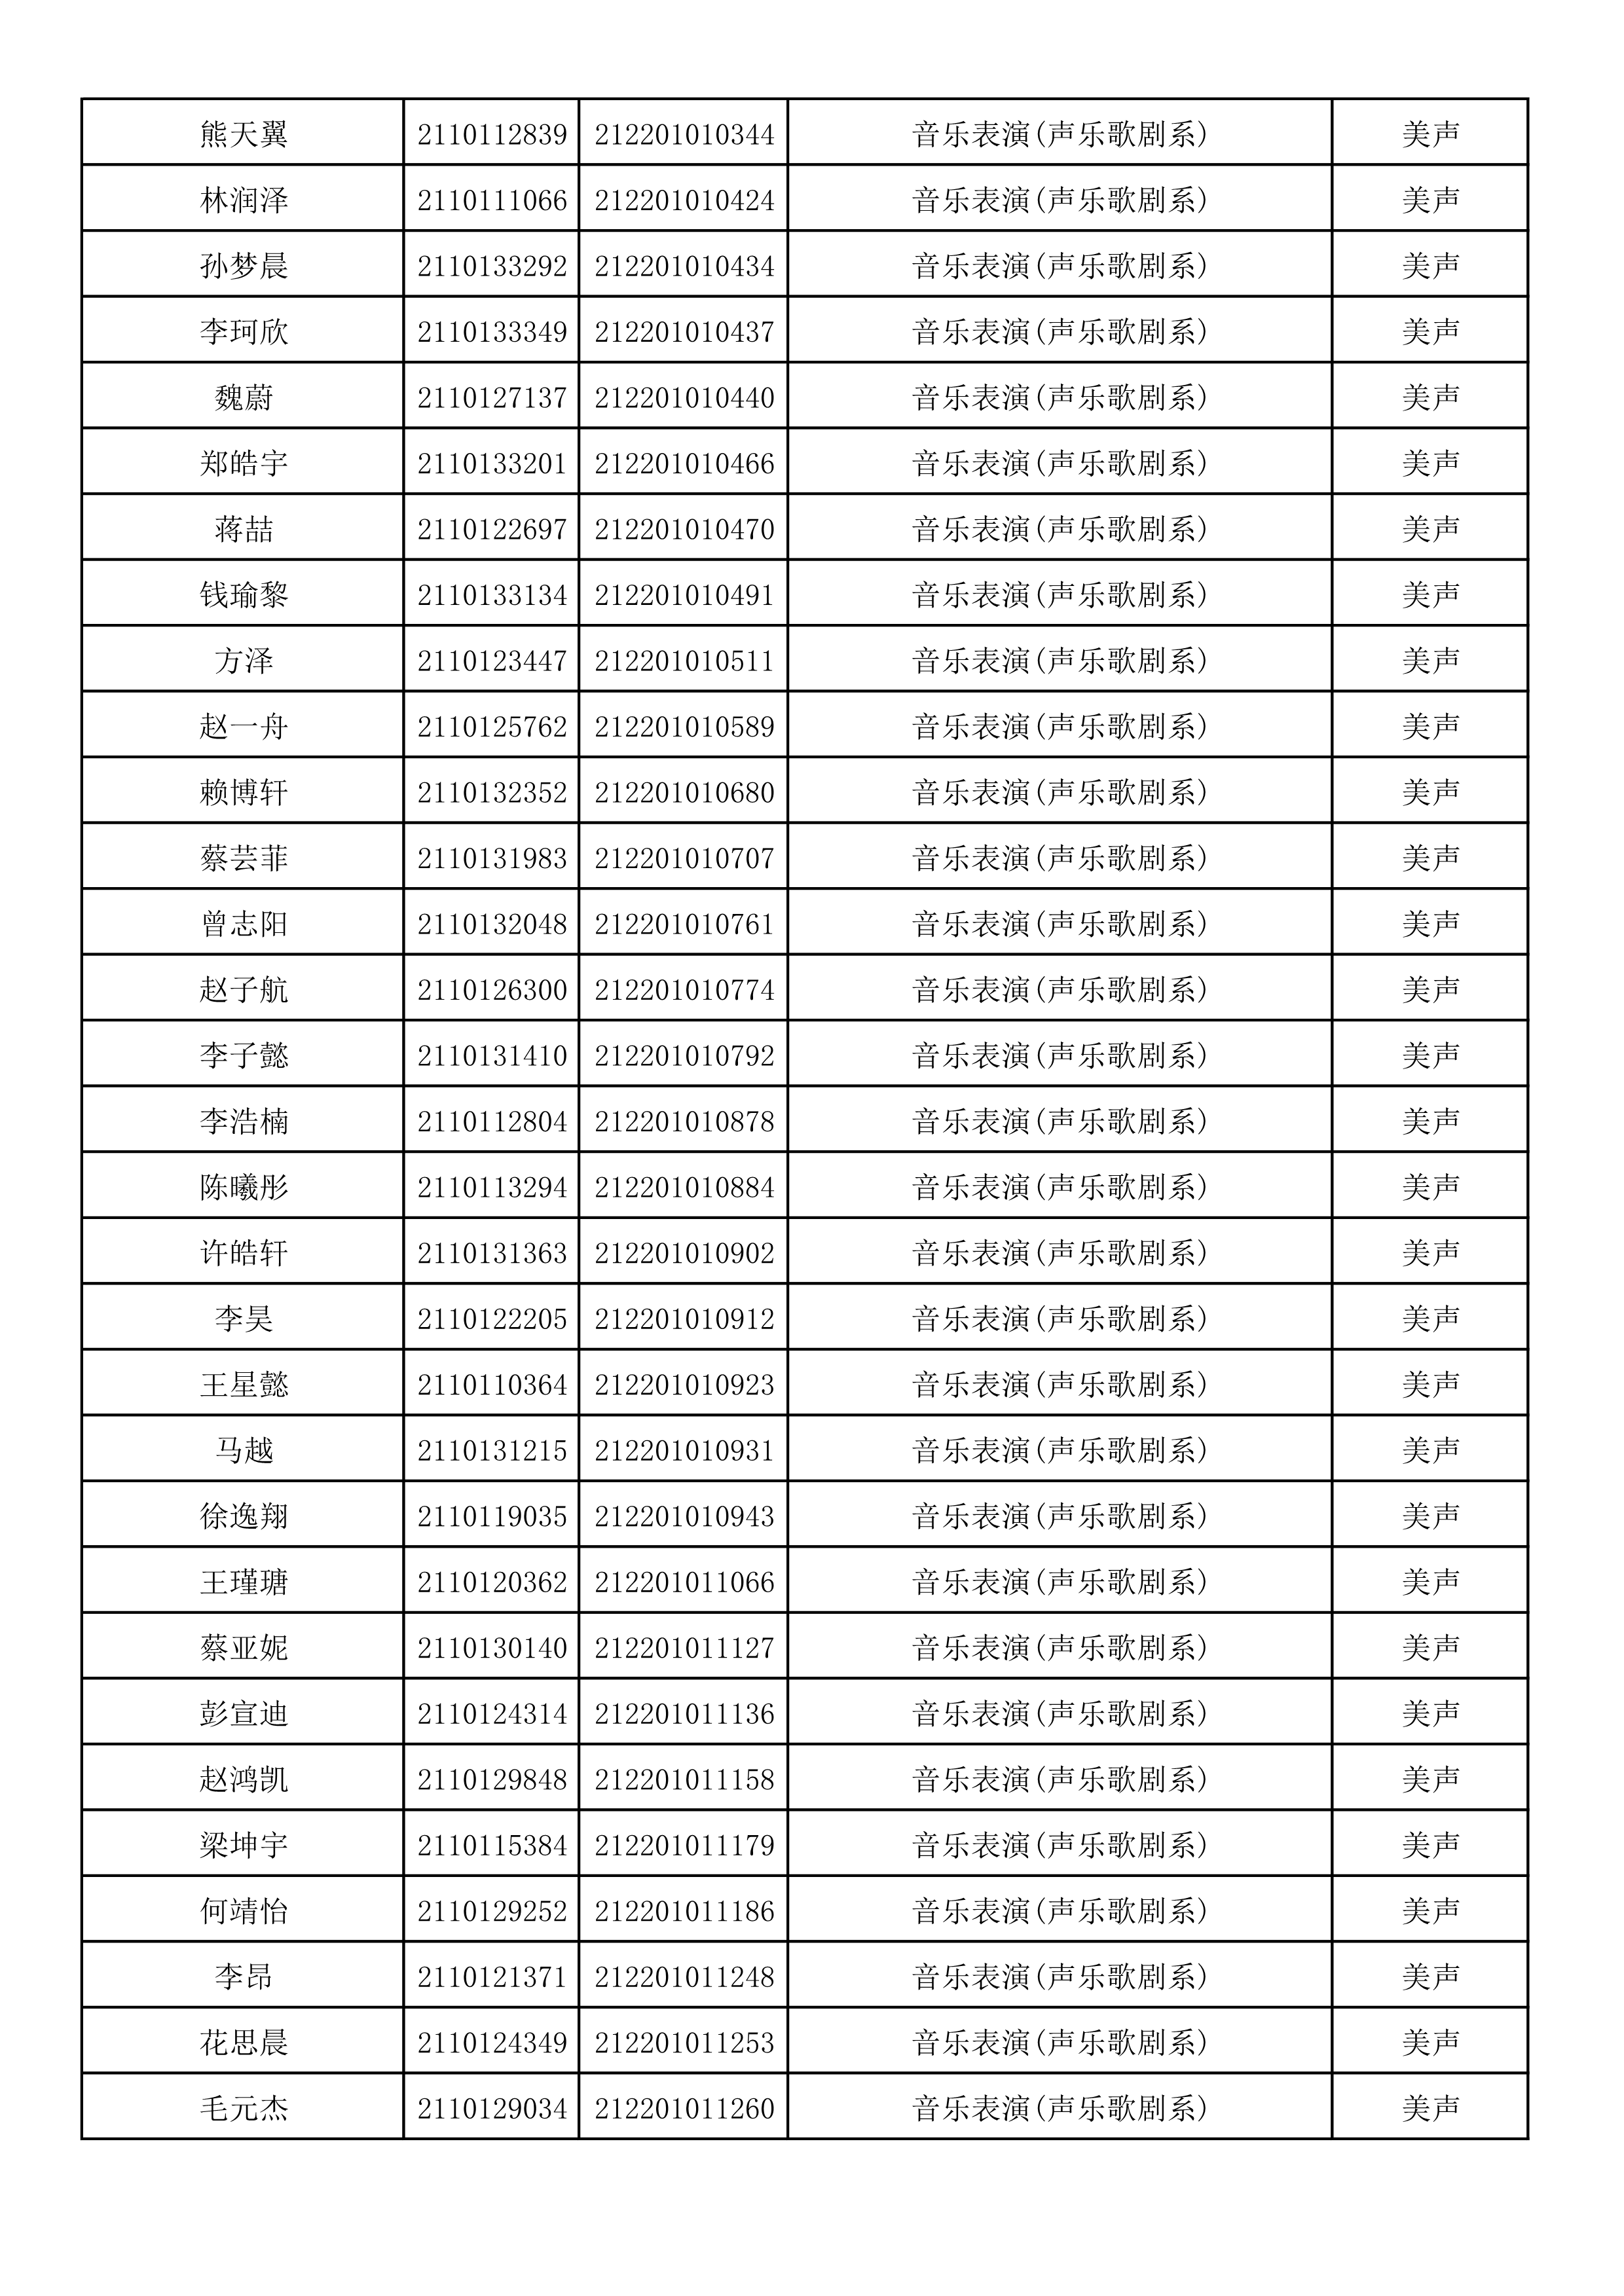 附件2：浙江音乐学院2021年本科招生专业校考初试合格考生名单_29.png